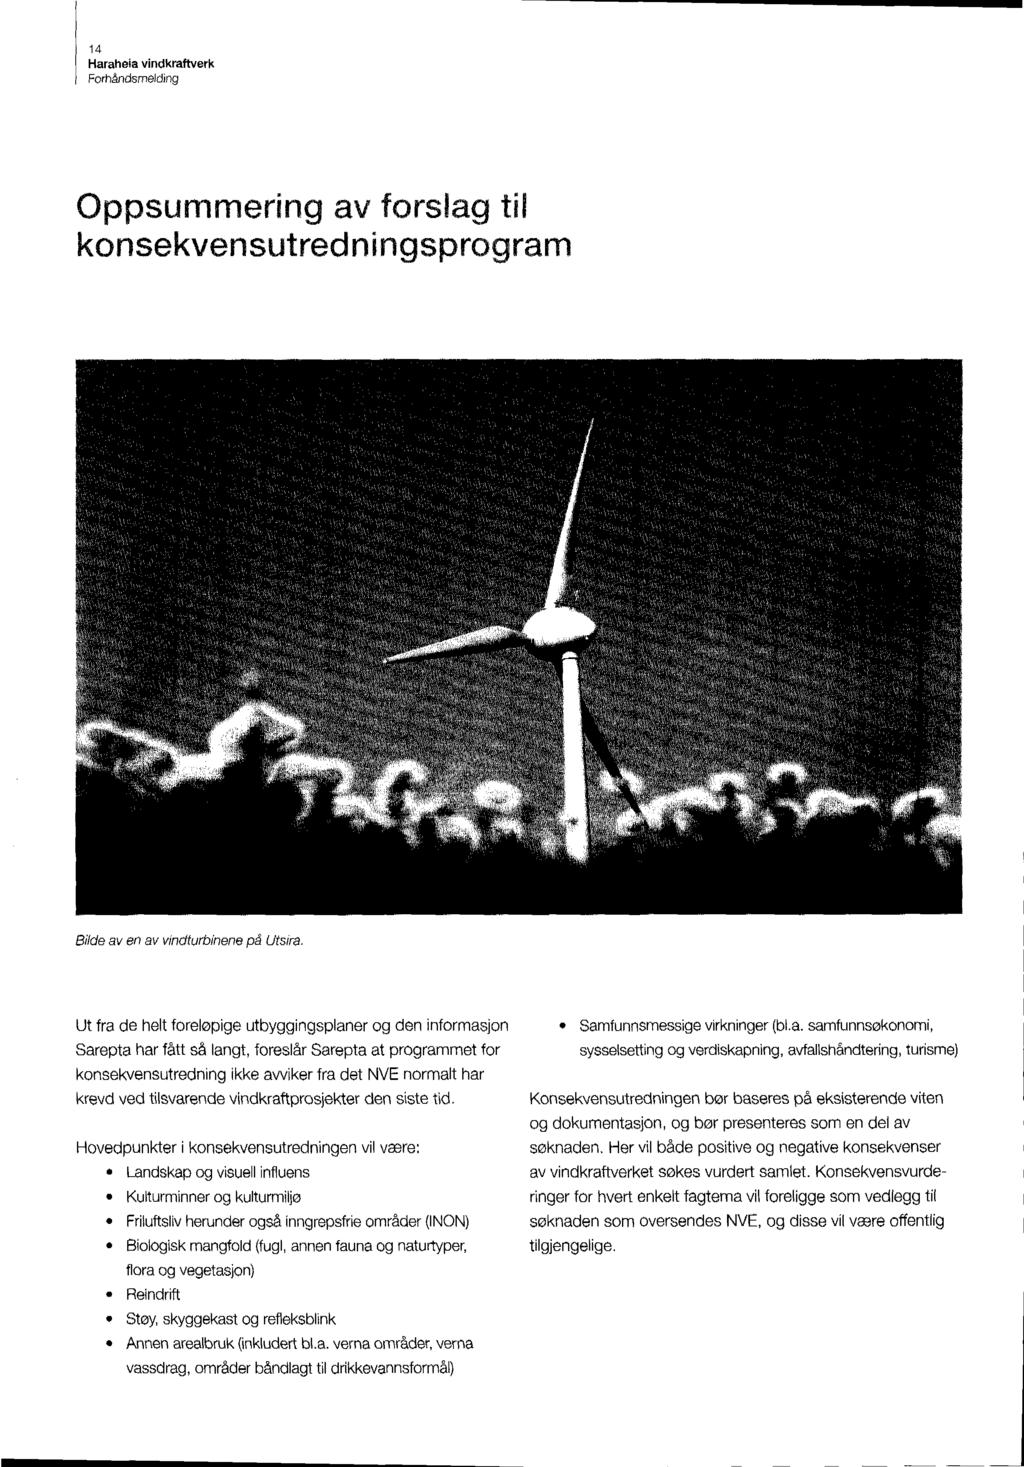 14 Oppsummering av forslag til konsekvensutredningsprogram Bilde av en av vindturbinene på Utsira.